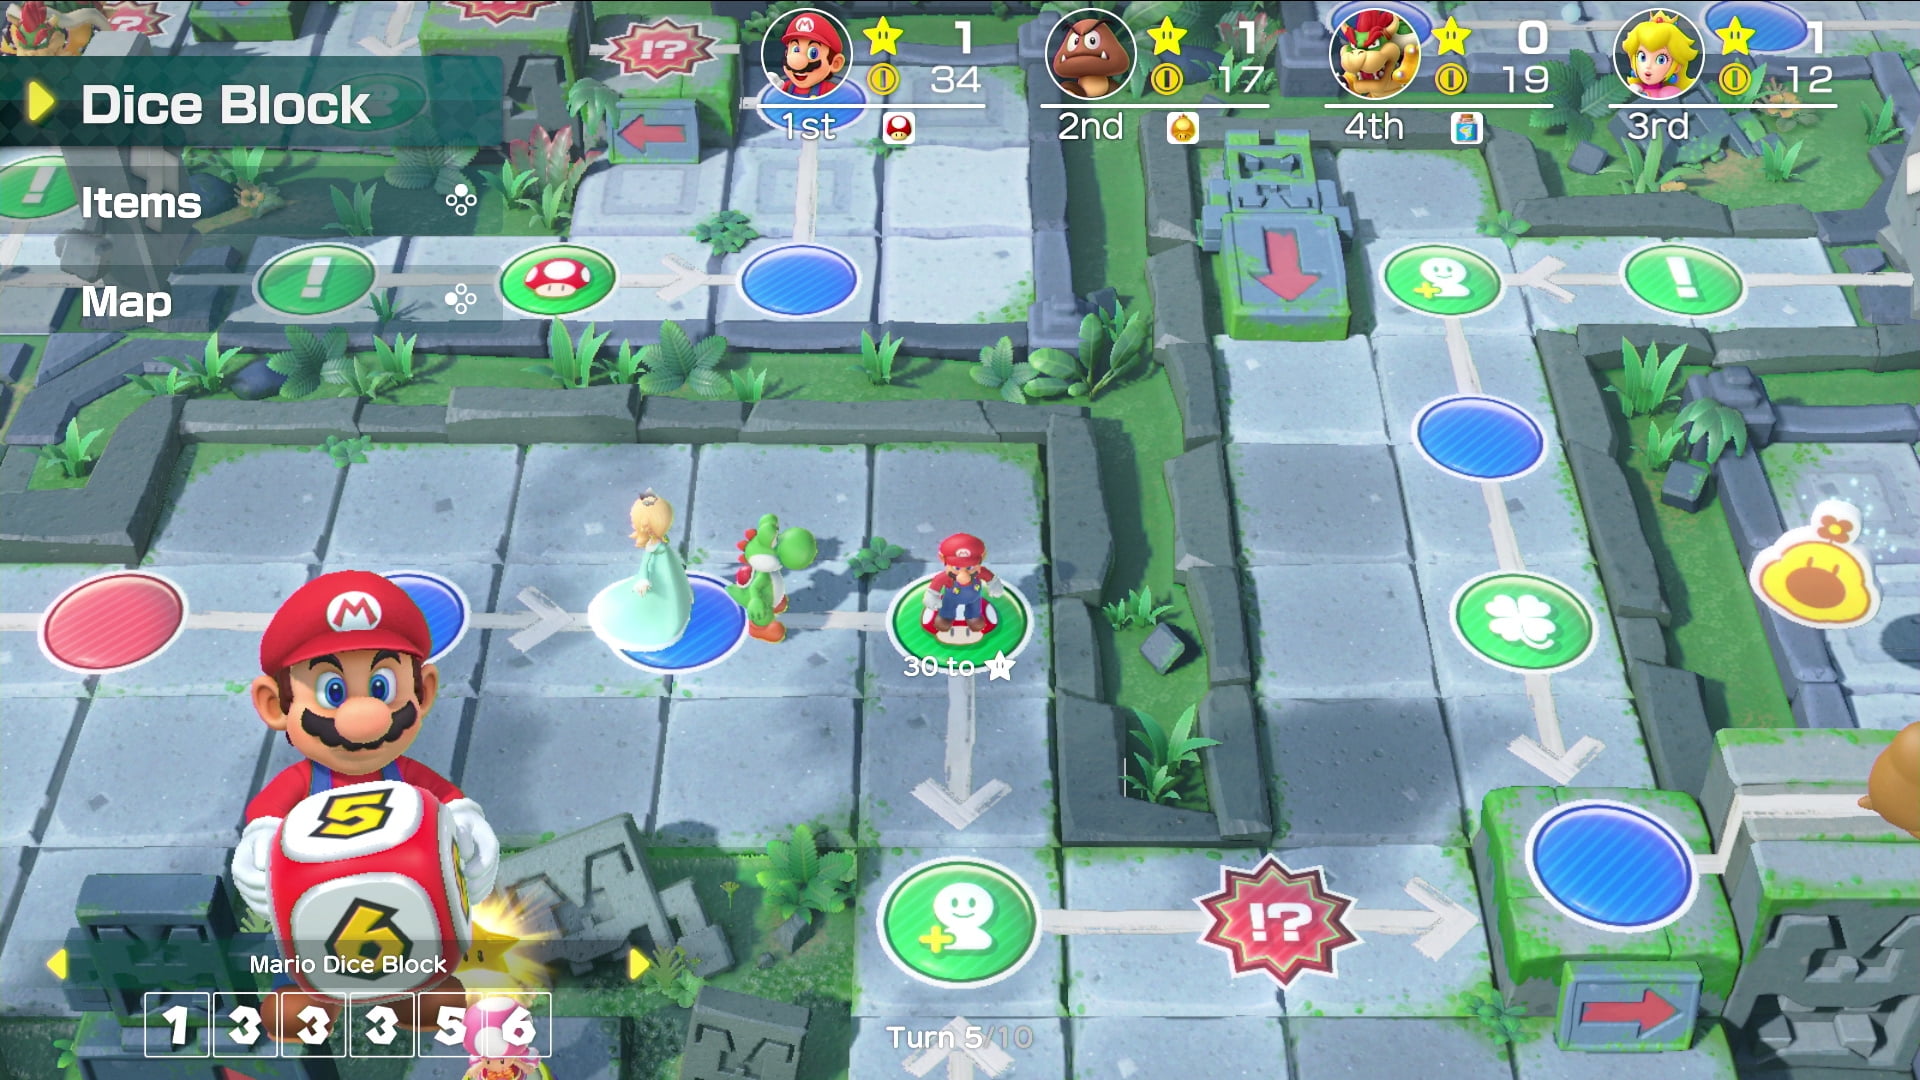 Jogo Nintendo Switch Switch Super Mario Party (Código de Descarga) +  Joy-Con Roxo e Verde